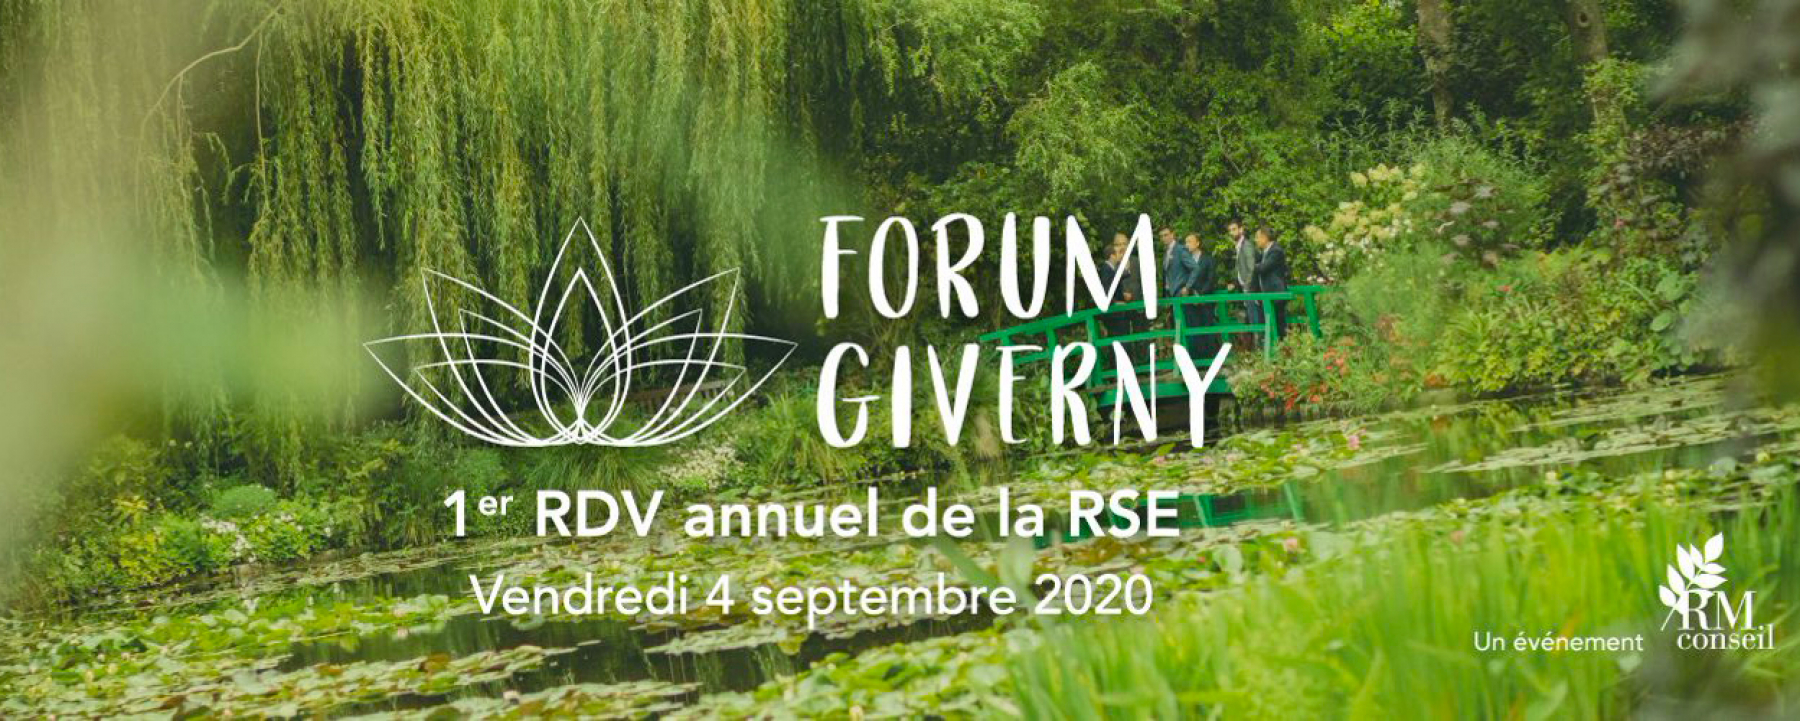 Forum de Giverny, organisé par RM Conseil, le 4 septembre 2020 